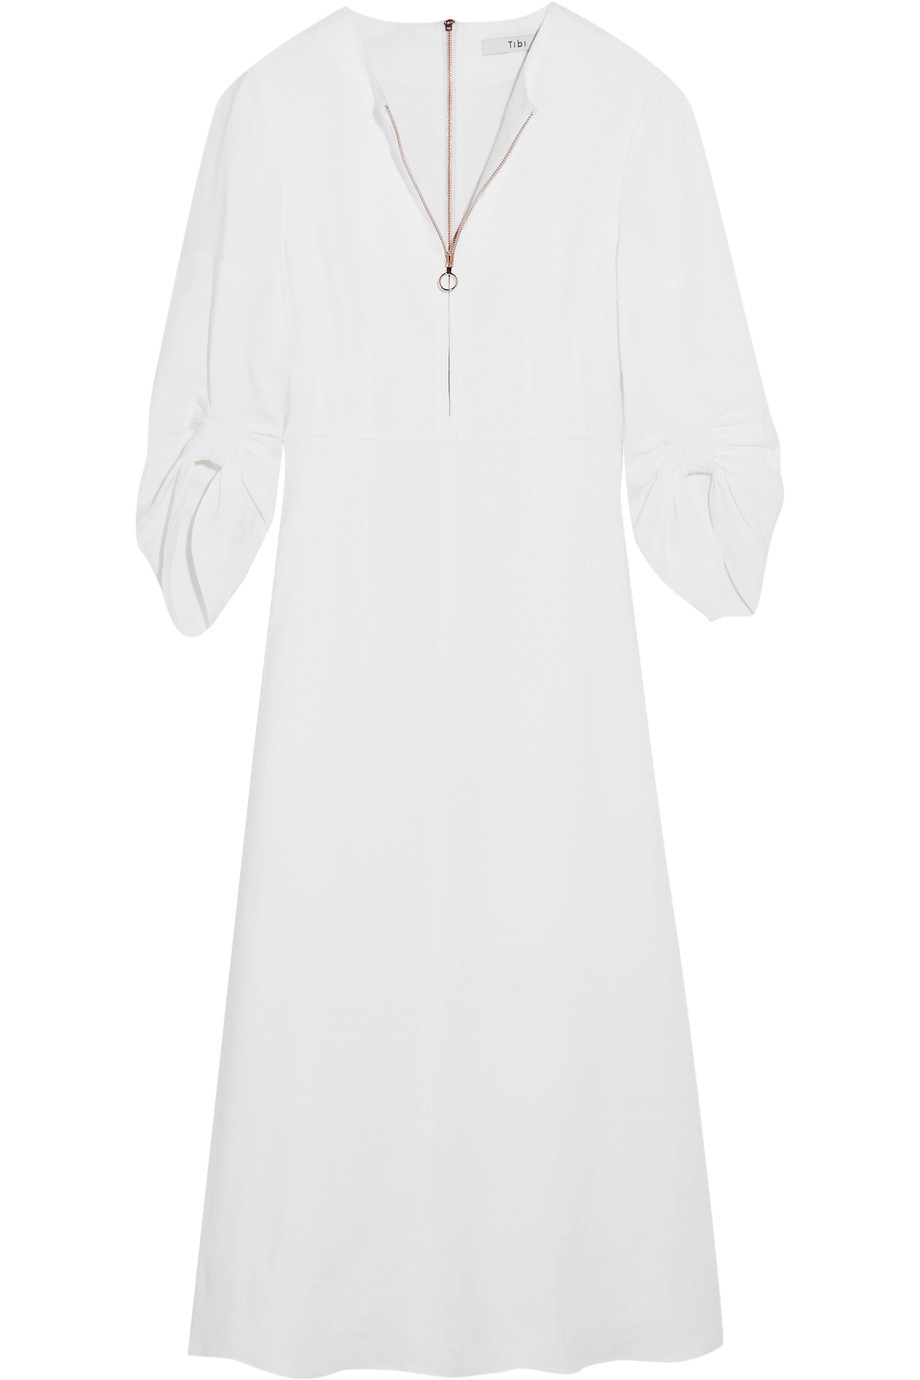 Tibi “Marta” dress ($650)